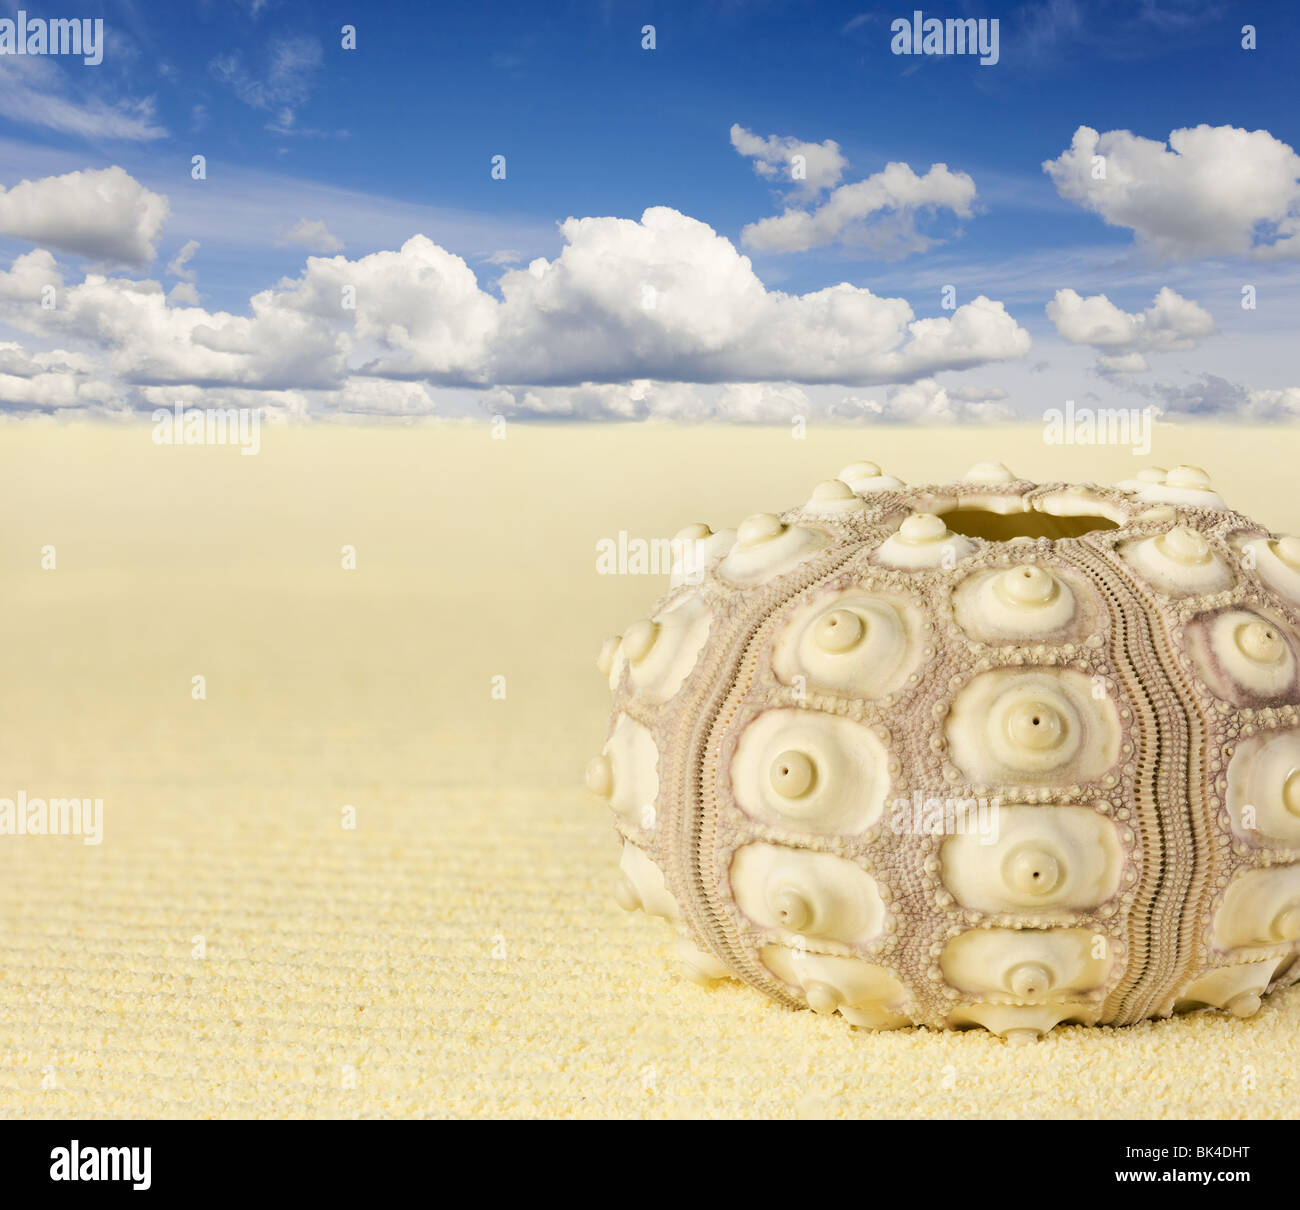 La coquille de l'oursin sur la plage - Collage Banque D'Images